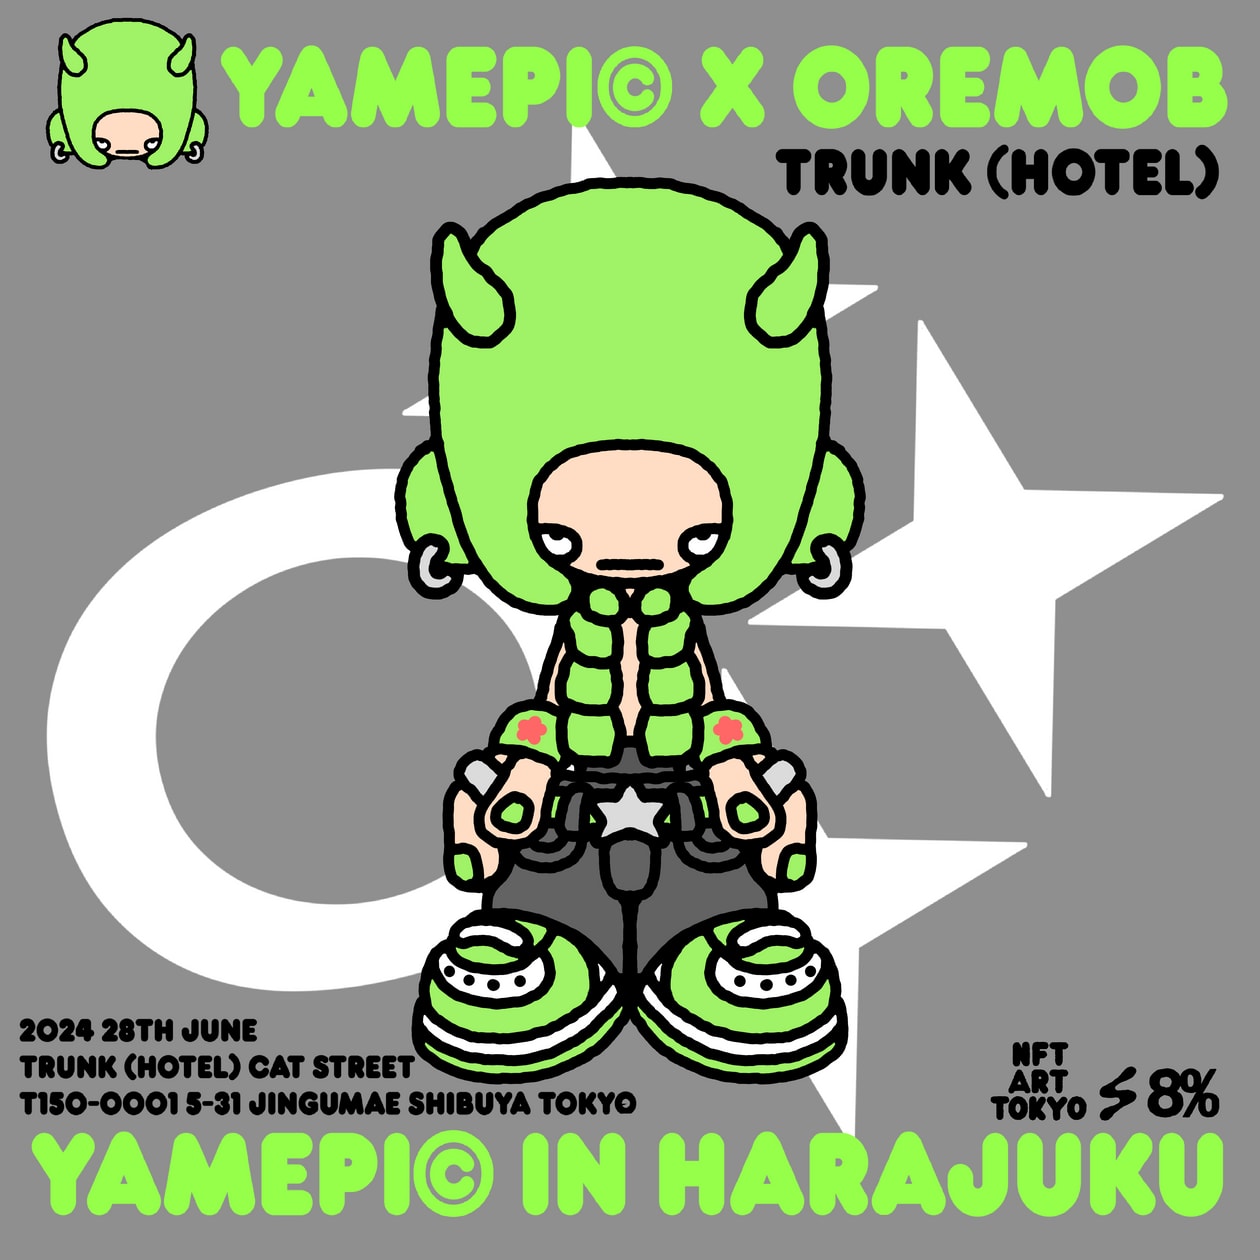 ヤメピが東京・原宿にてヤメピインハラジュクを開催 yamepi in harajuku hold info